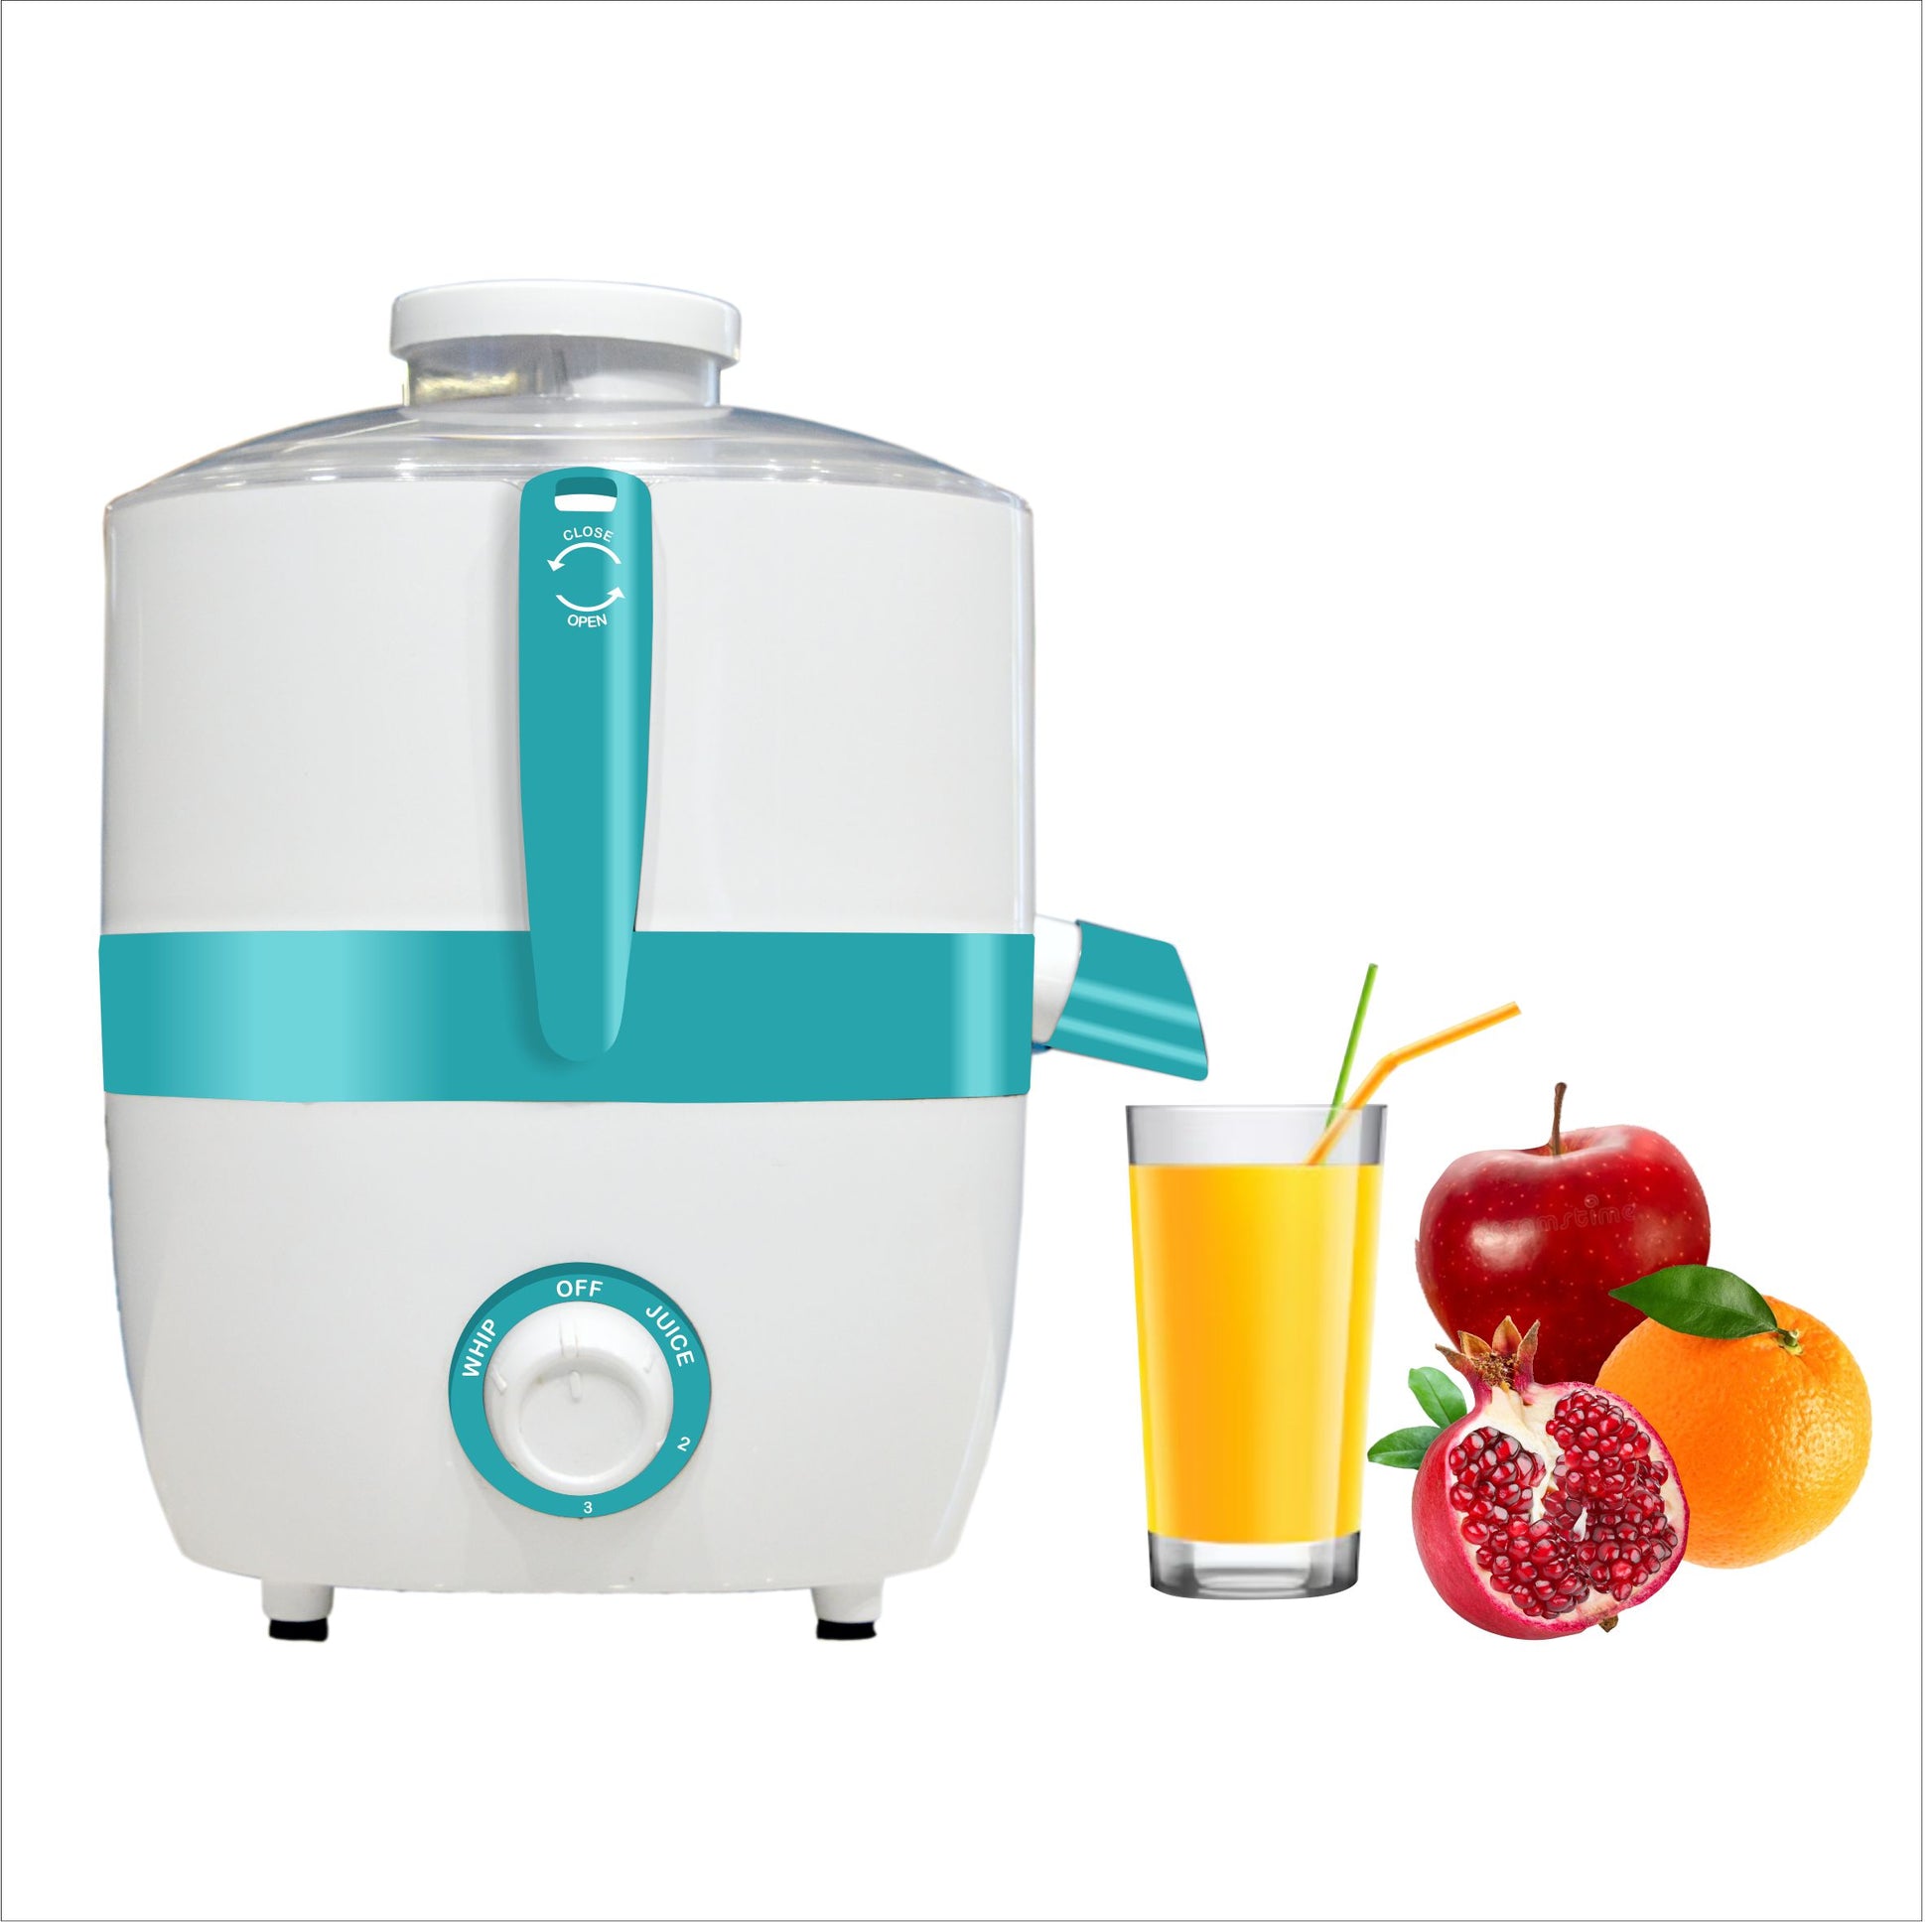 Softel Centrifugal Sr. 600 Watts Juicer - Make Fresh Juice | Fruit and Vegetable Juicer